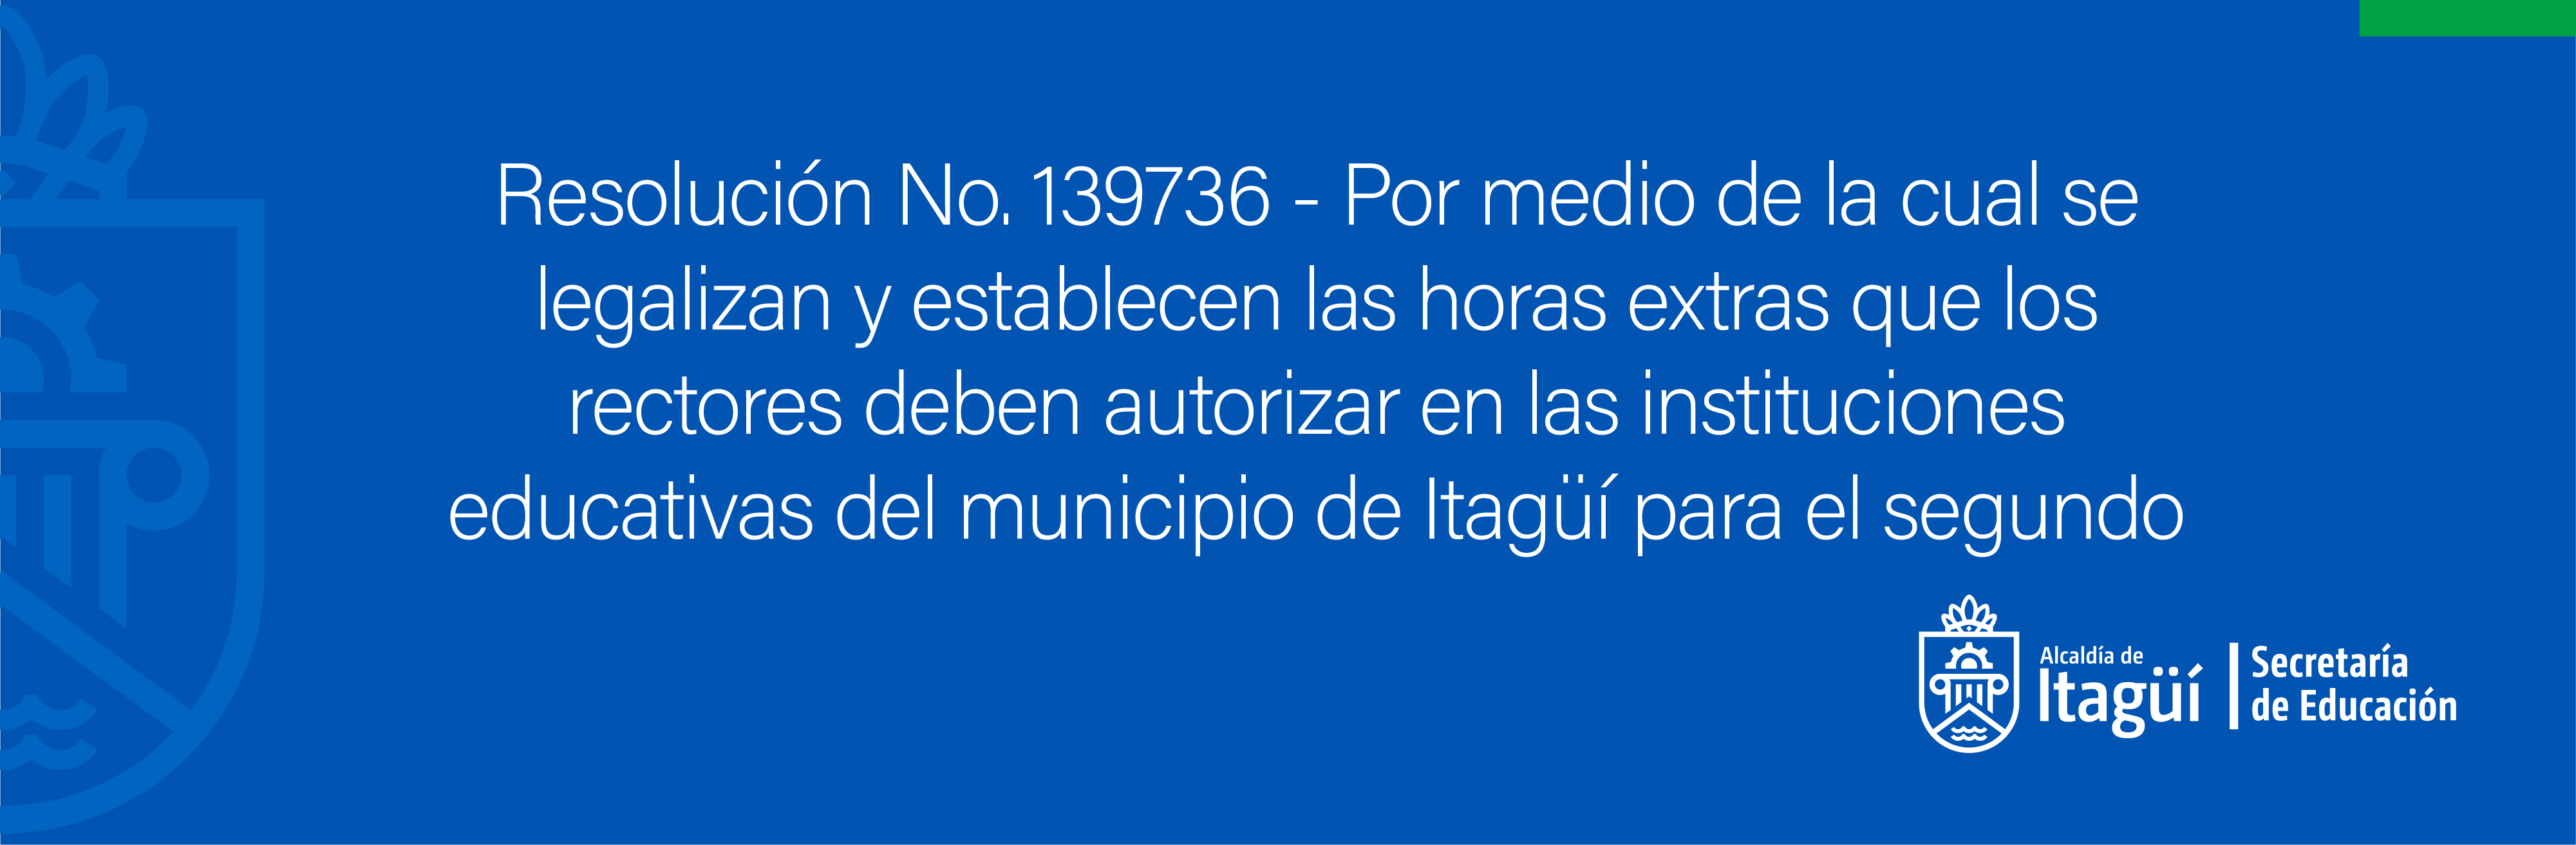 Resolución No. 139736 - Por medio de la cual se legalizan y establecen las horas extras que los rectores deben autorizar en las instituciones educativas del municipio de Itagüí para el segundo semestre del año 2022